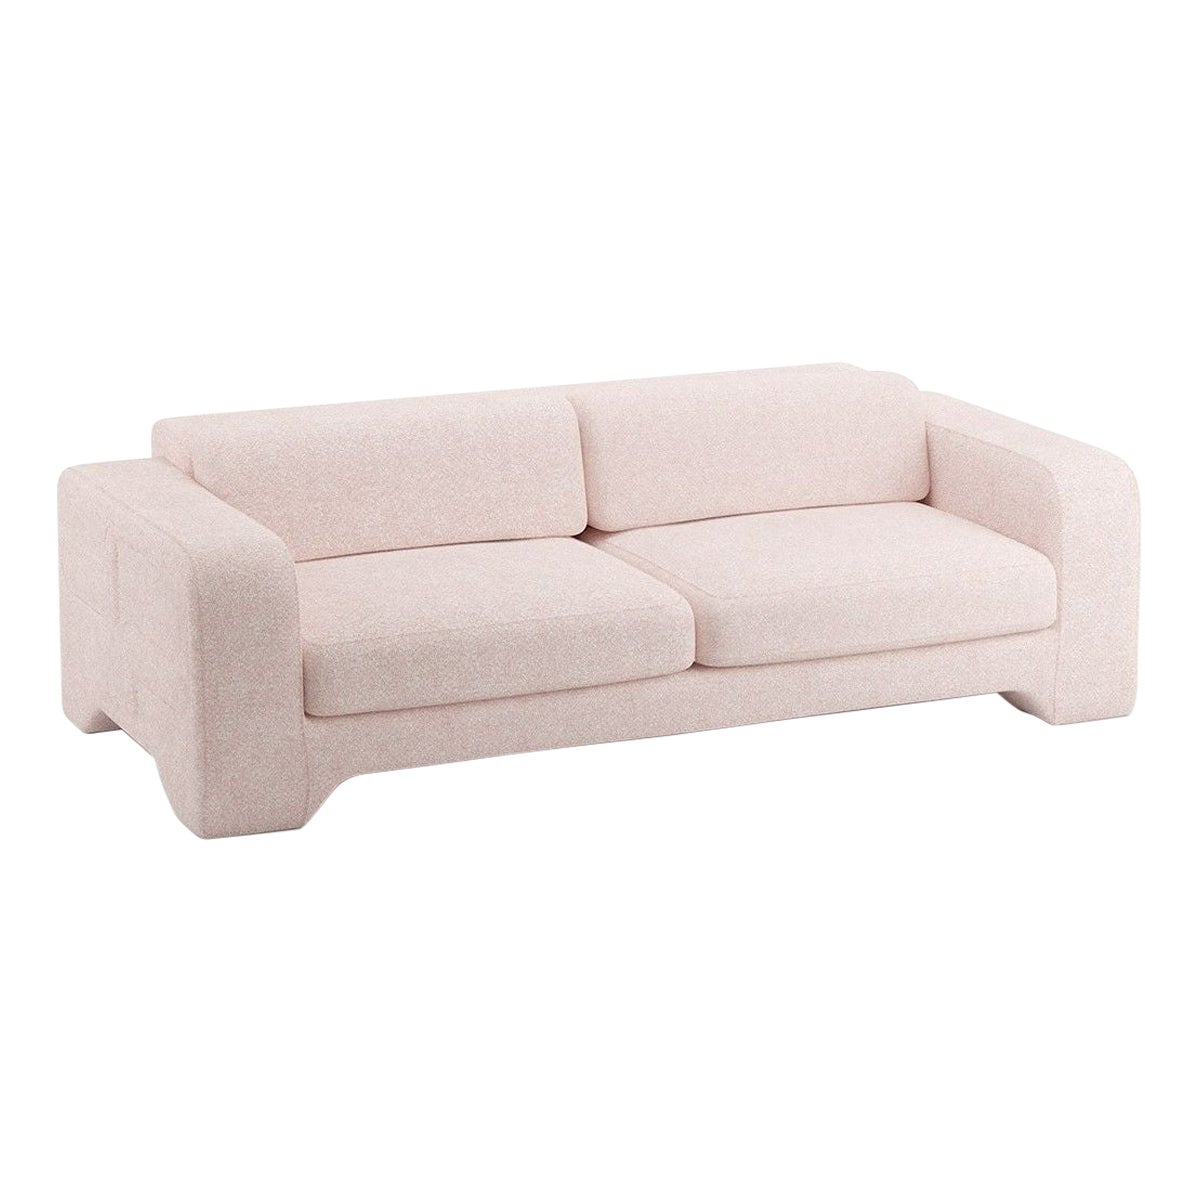 Popus Editions Giovanna 4 Seater Sofa in Powder Zanzi Linen Fabric